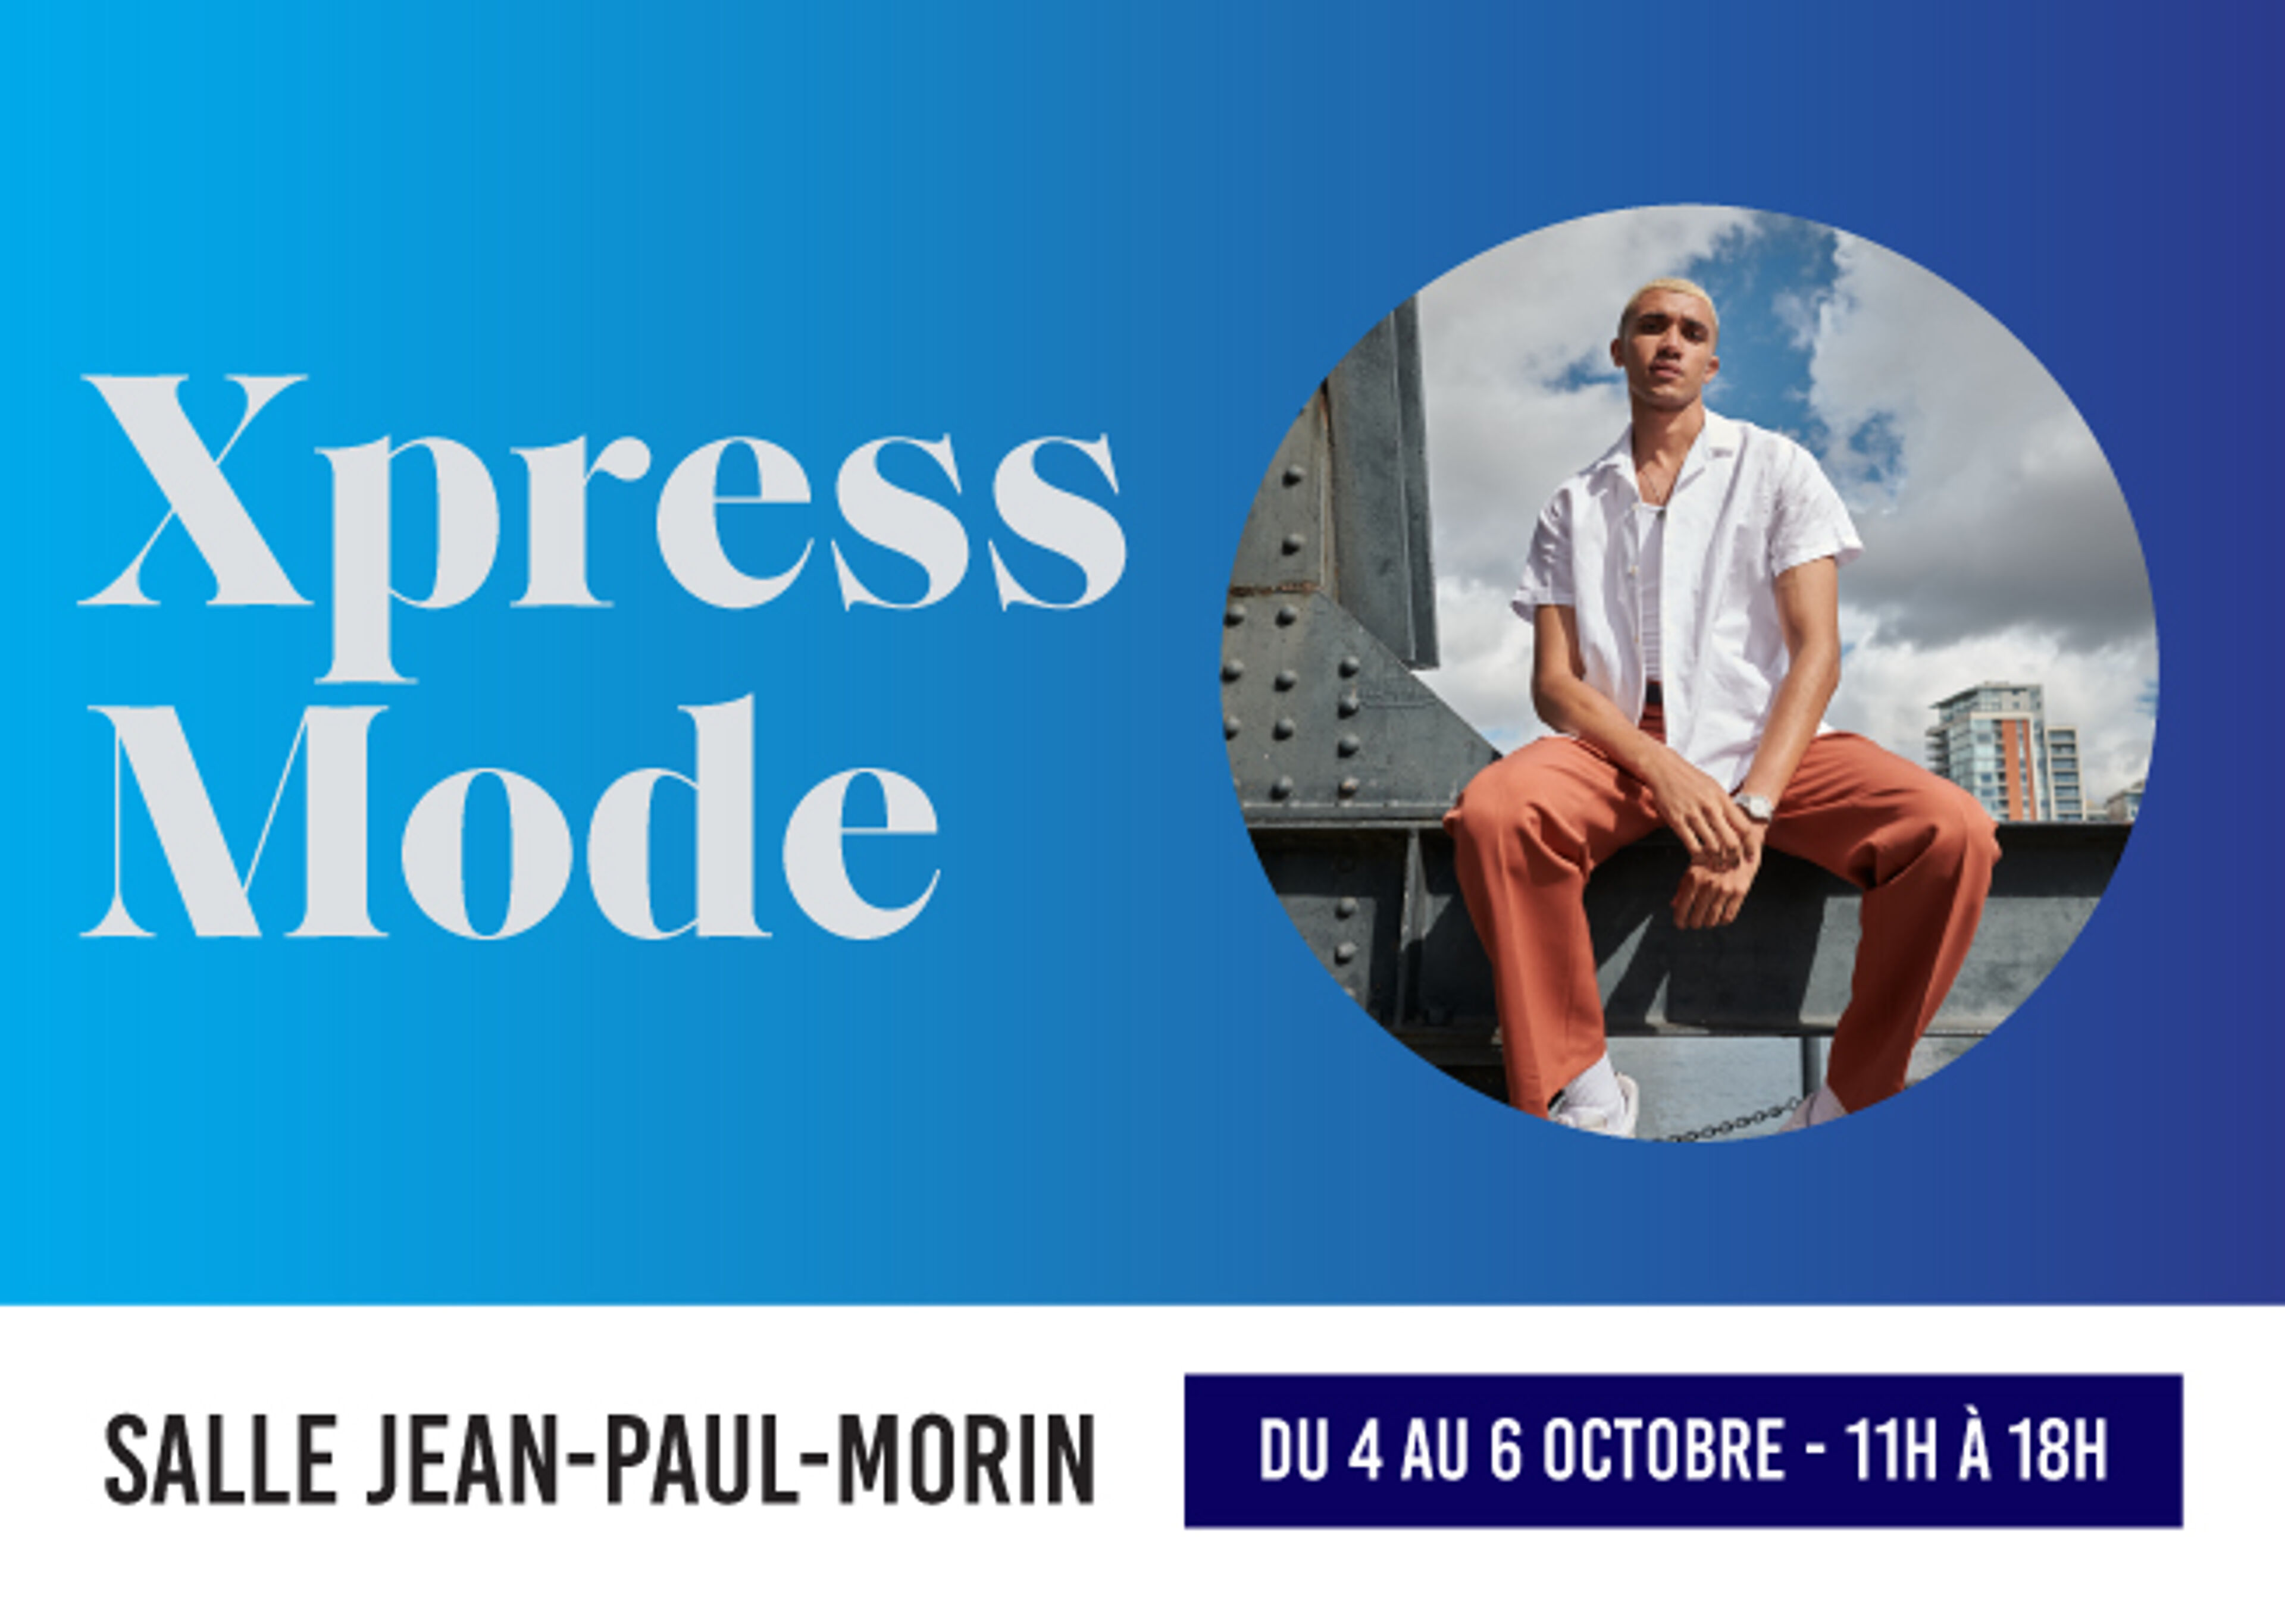 Dépliant pour l'événement de mode "Xpress Mode" à la Salle Jean-Paul-Morin, du 4 au 6 octobre, avec un homme élégant.